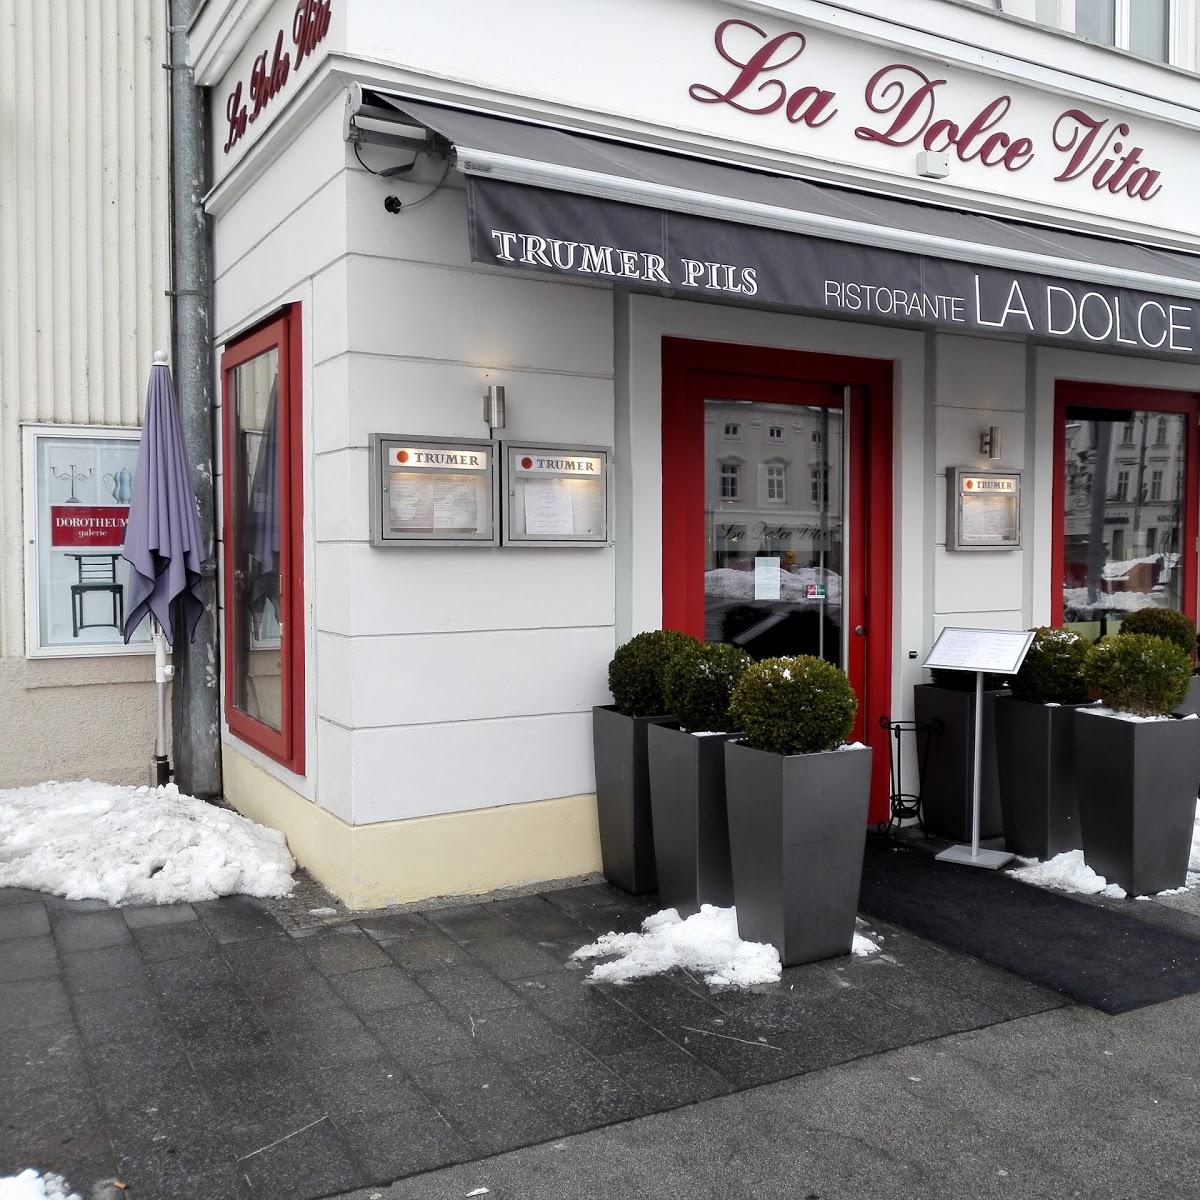 Restaurant "La Dolce Vita" in Sankt Pölten